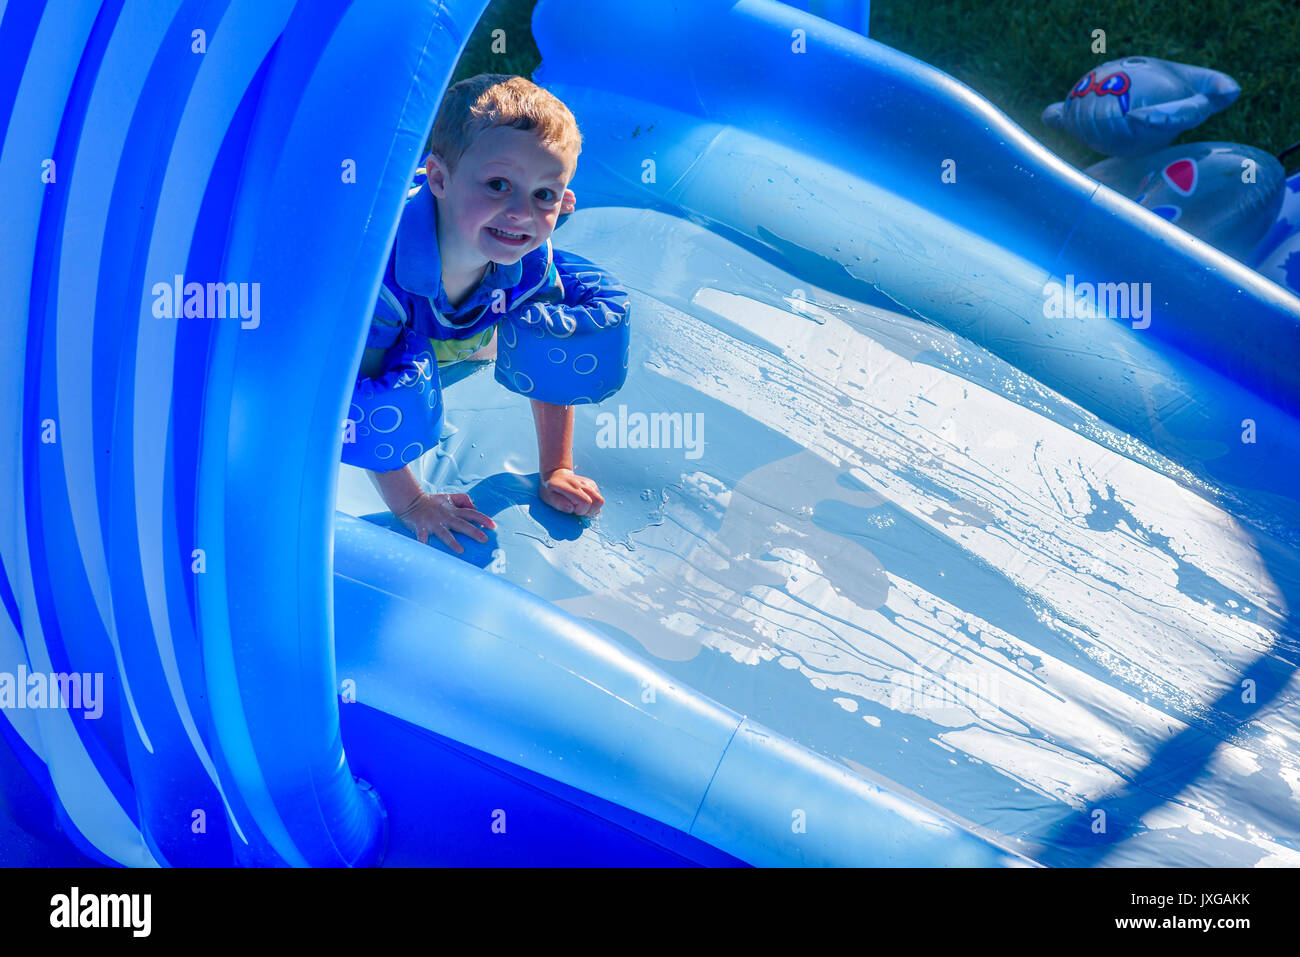 Young boy on backyard water slide. Stock Photo